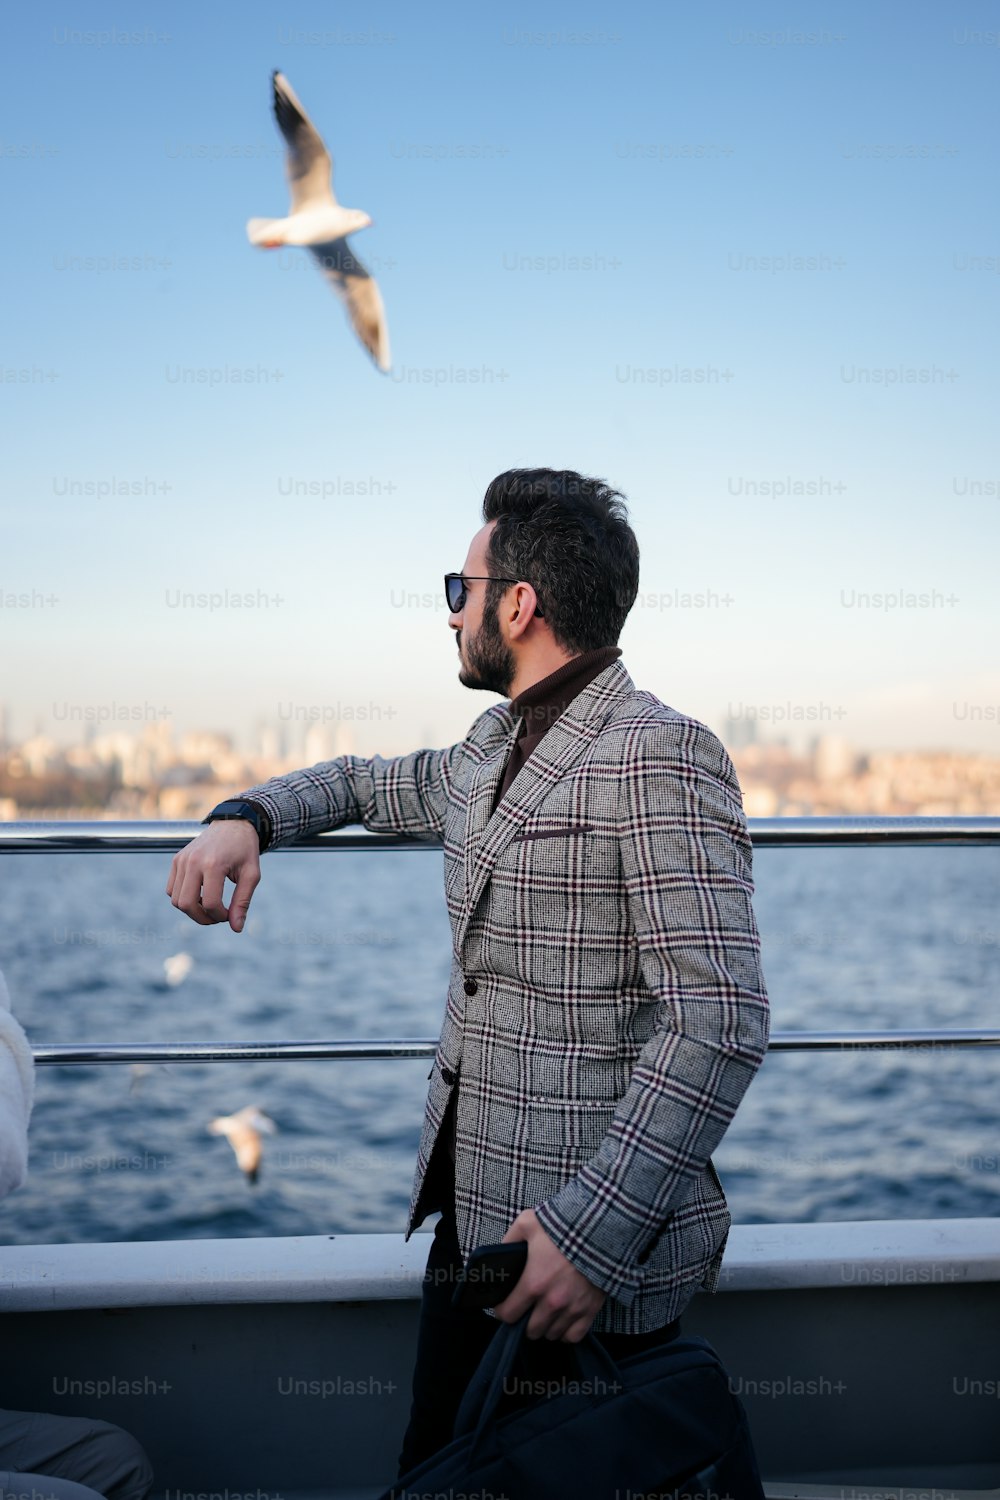 Un hombre parado en un bote mirando una gaviota